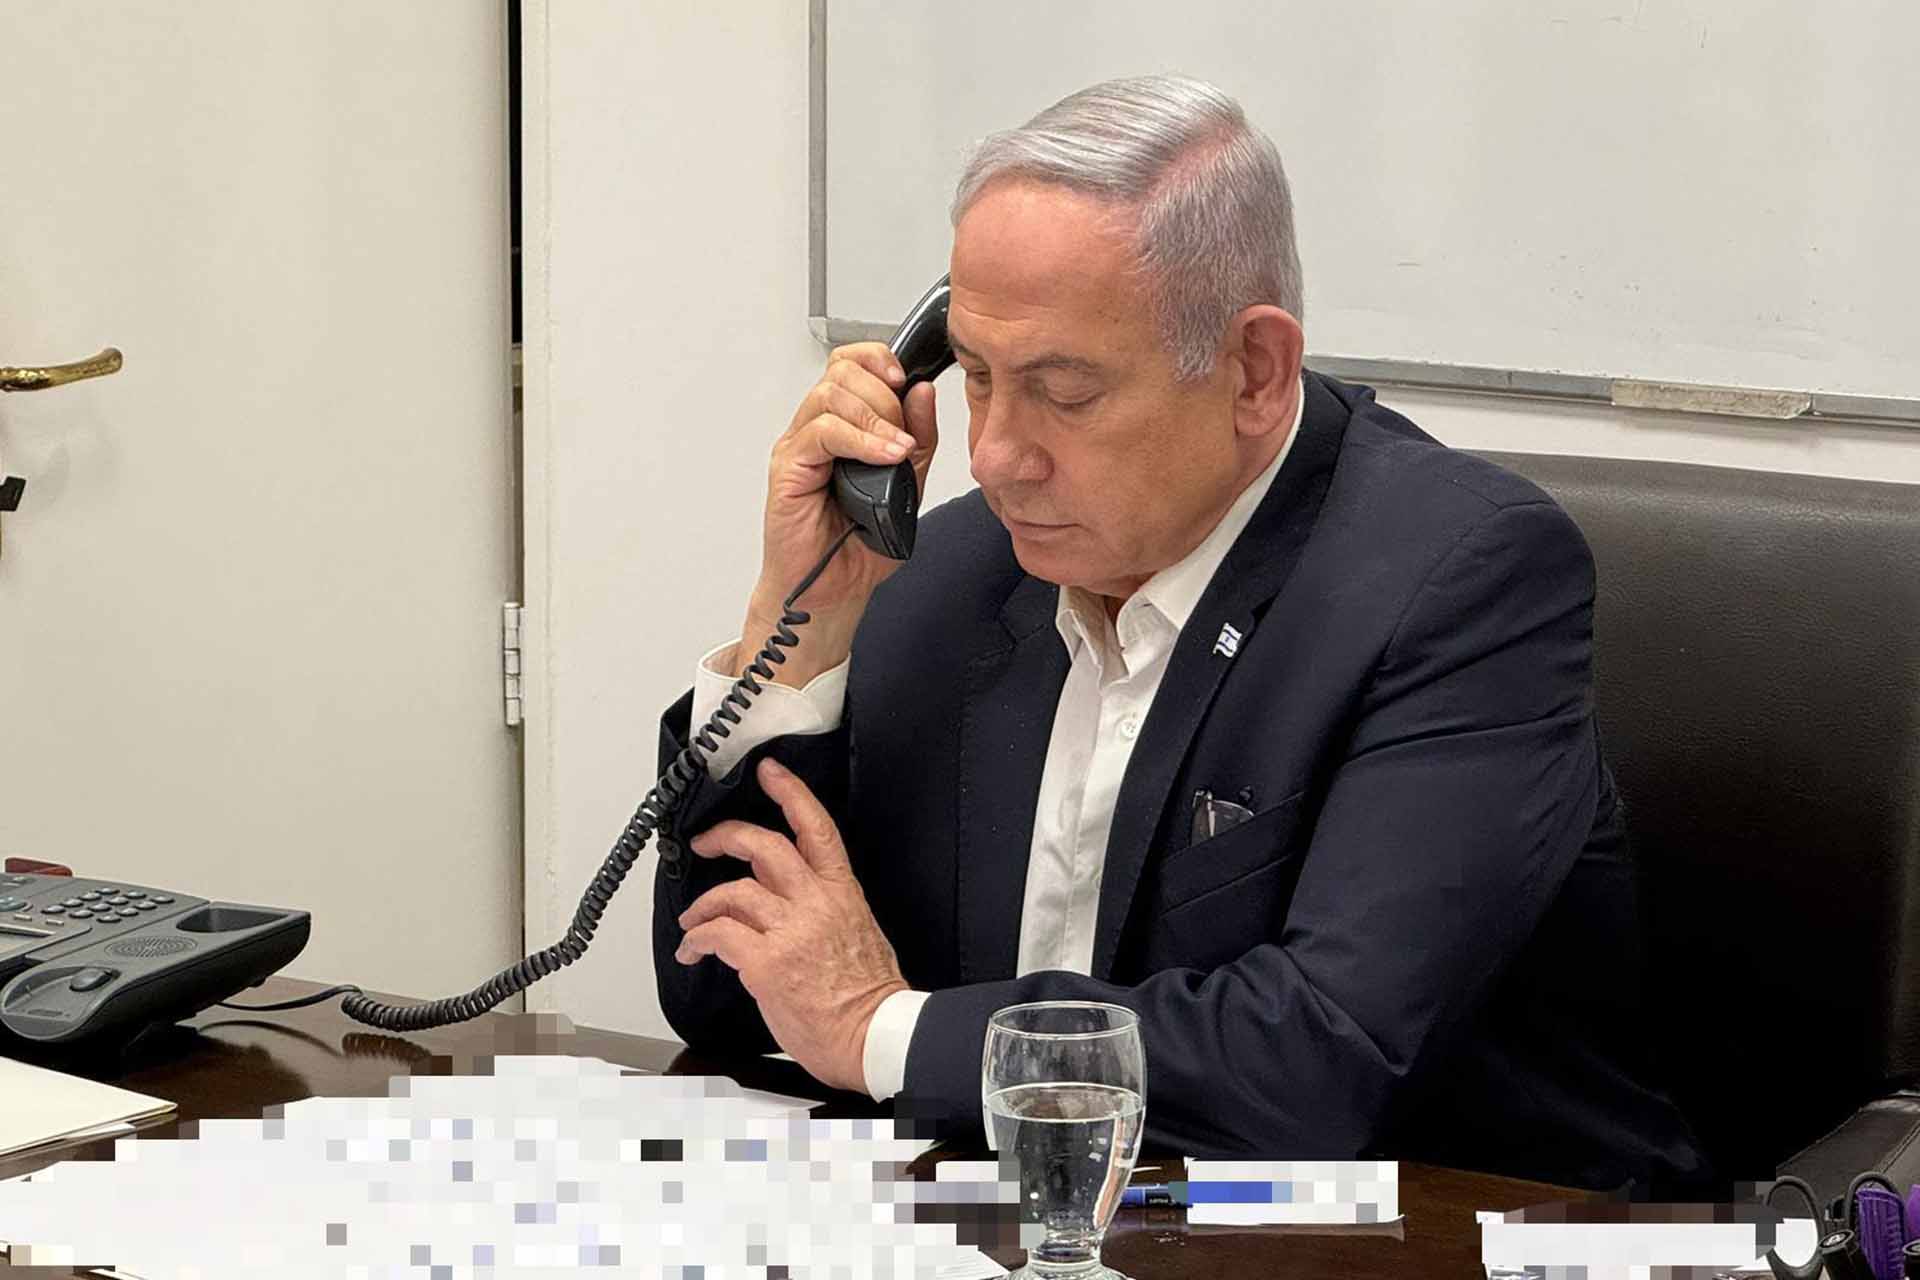 فايننشال تايمز: إسرائيل بحاجة لقيادة مسؤولة ونتنياهو ليس الحل | سياسة – البوكس نيوز